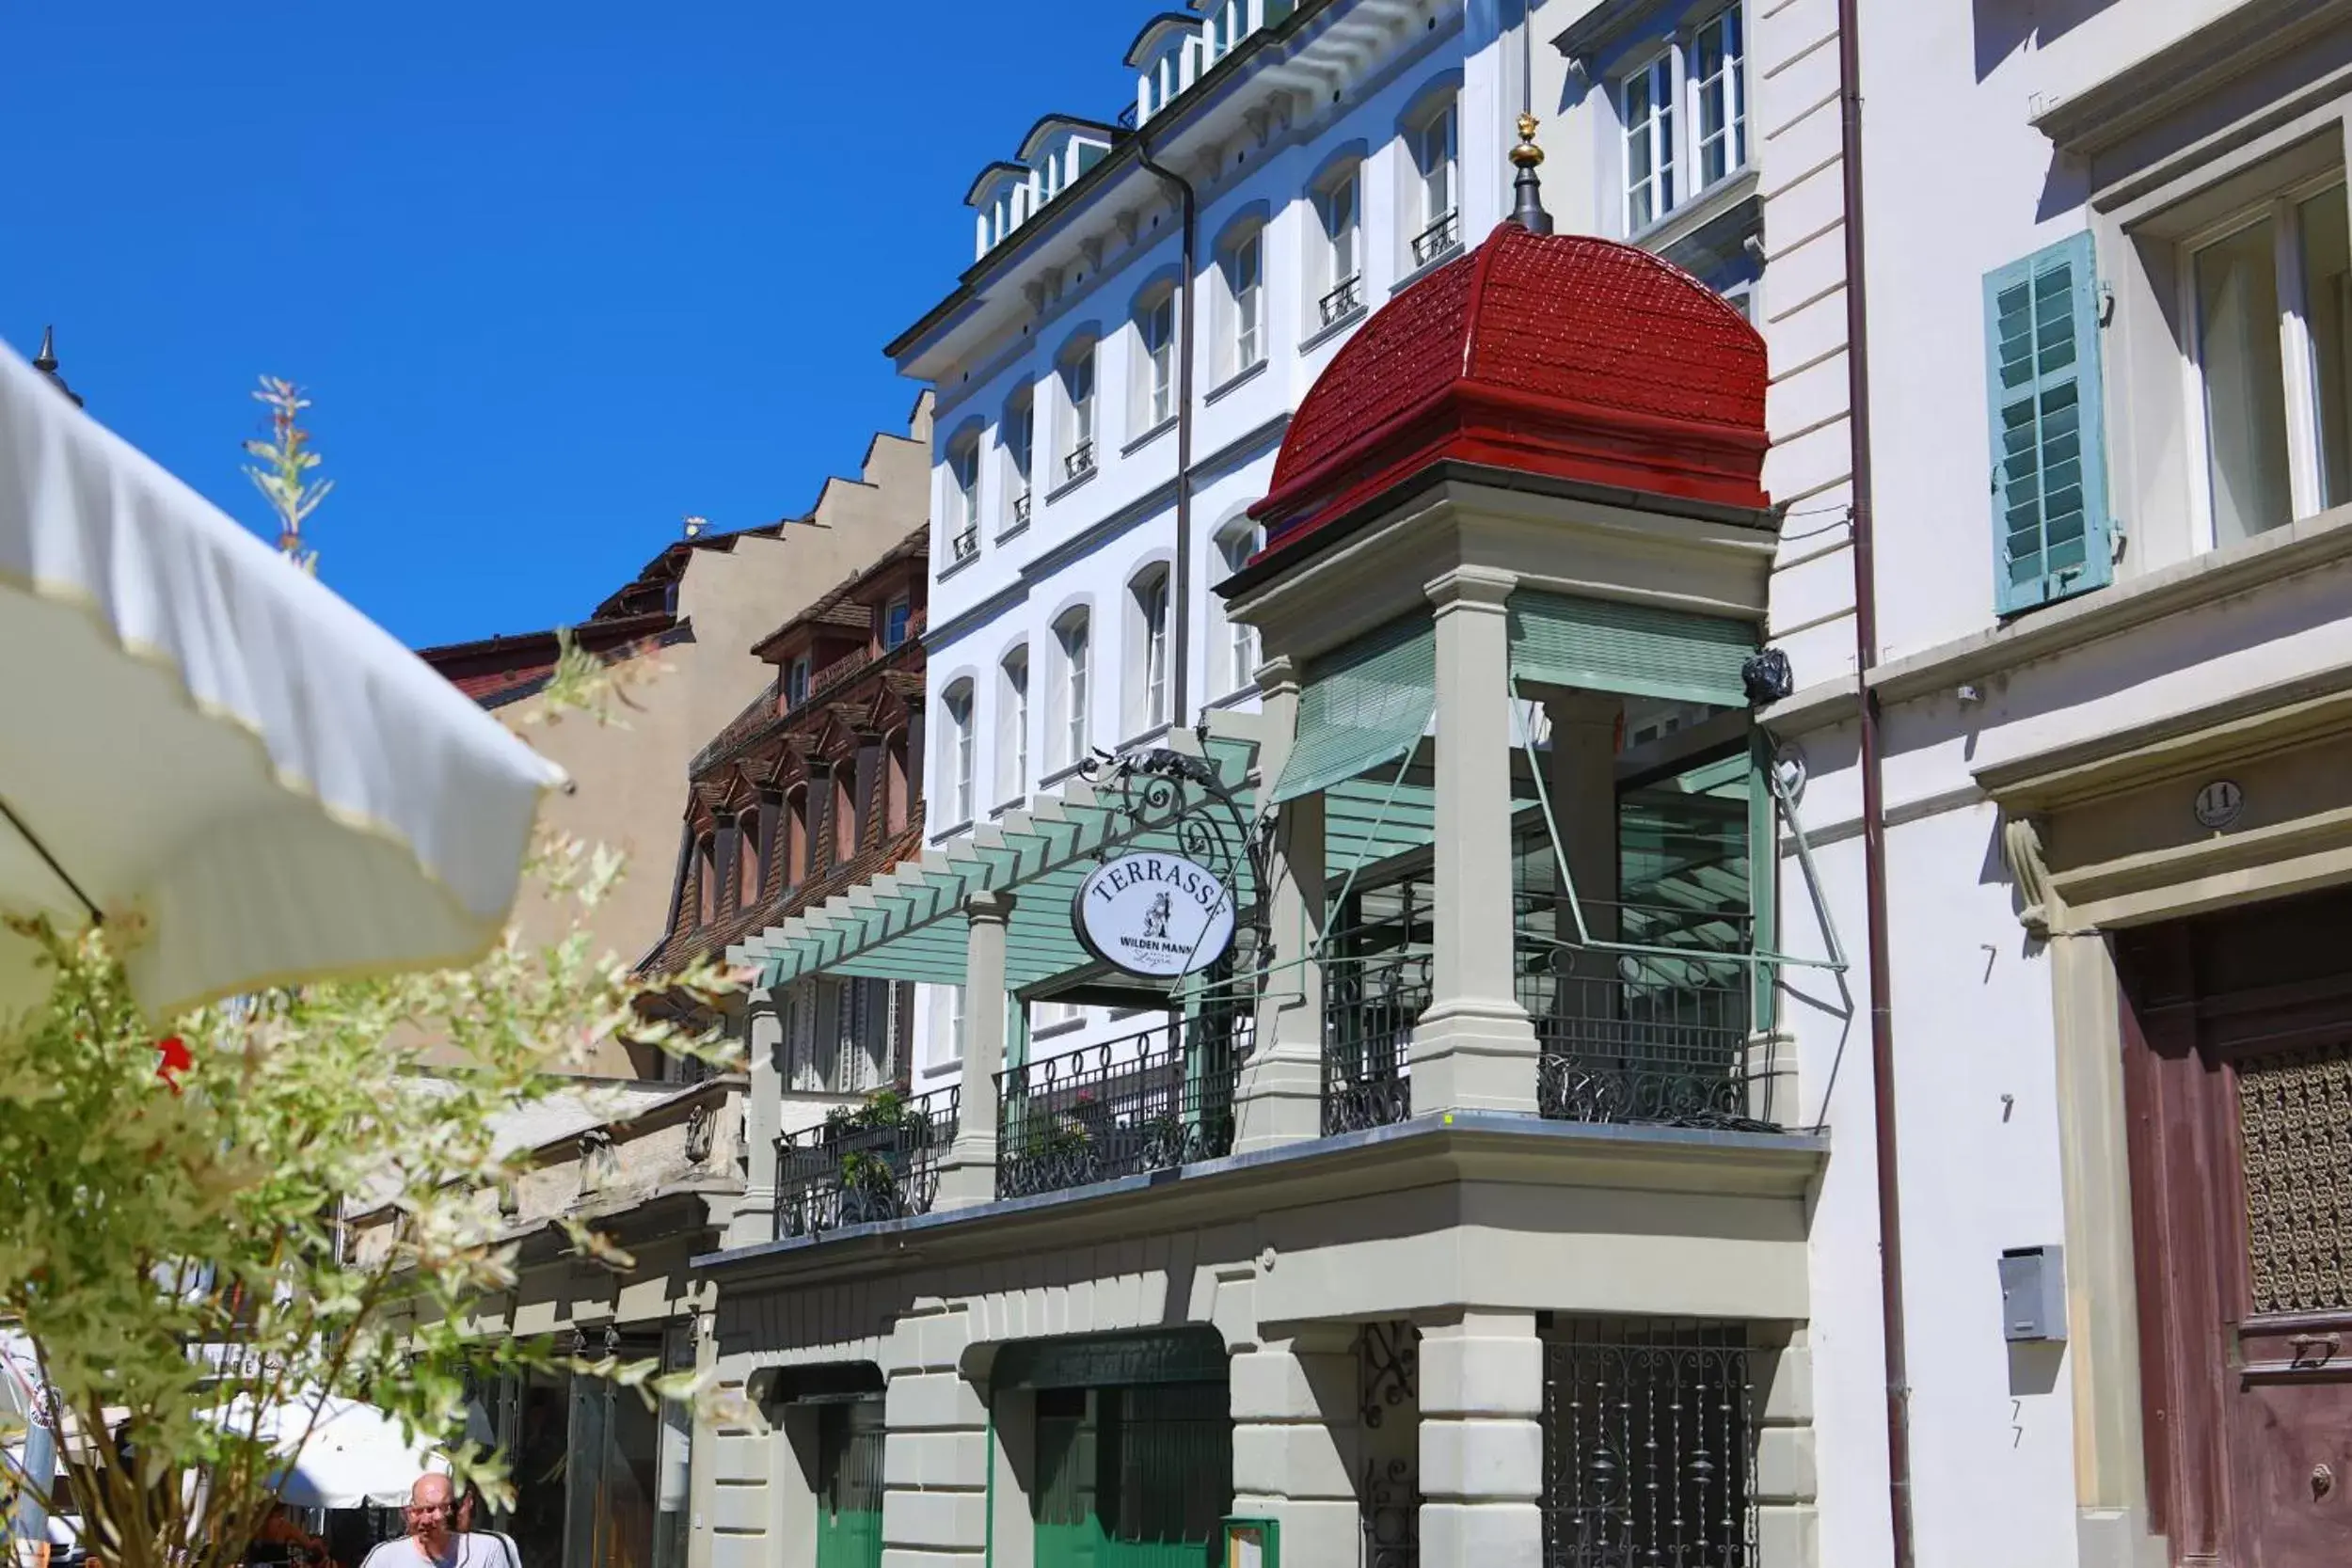 Property Building in Romantik Hotel Wilden Mann Luzern